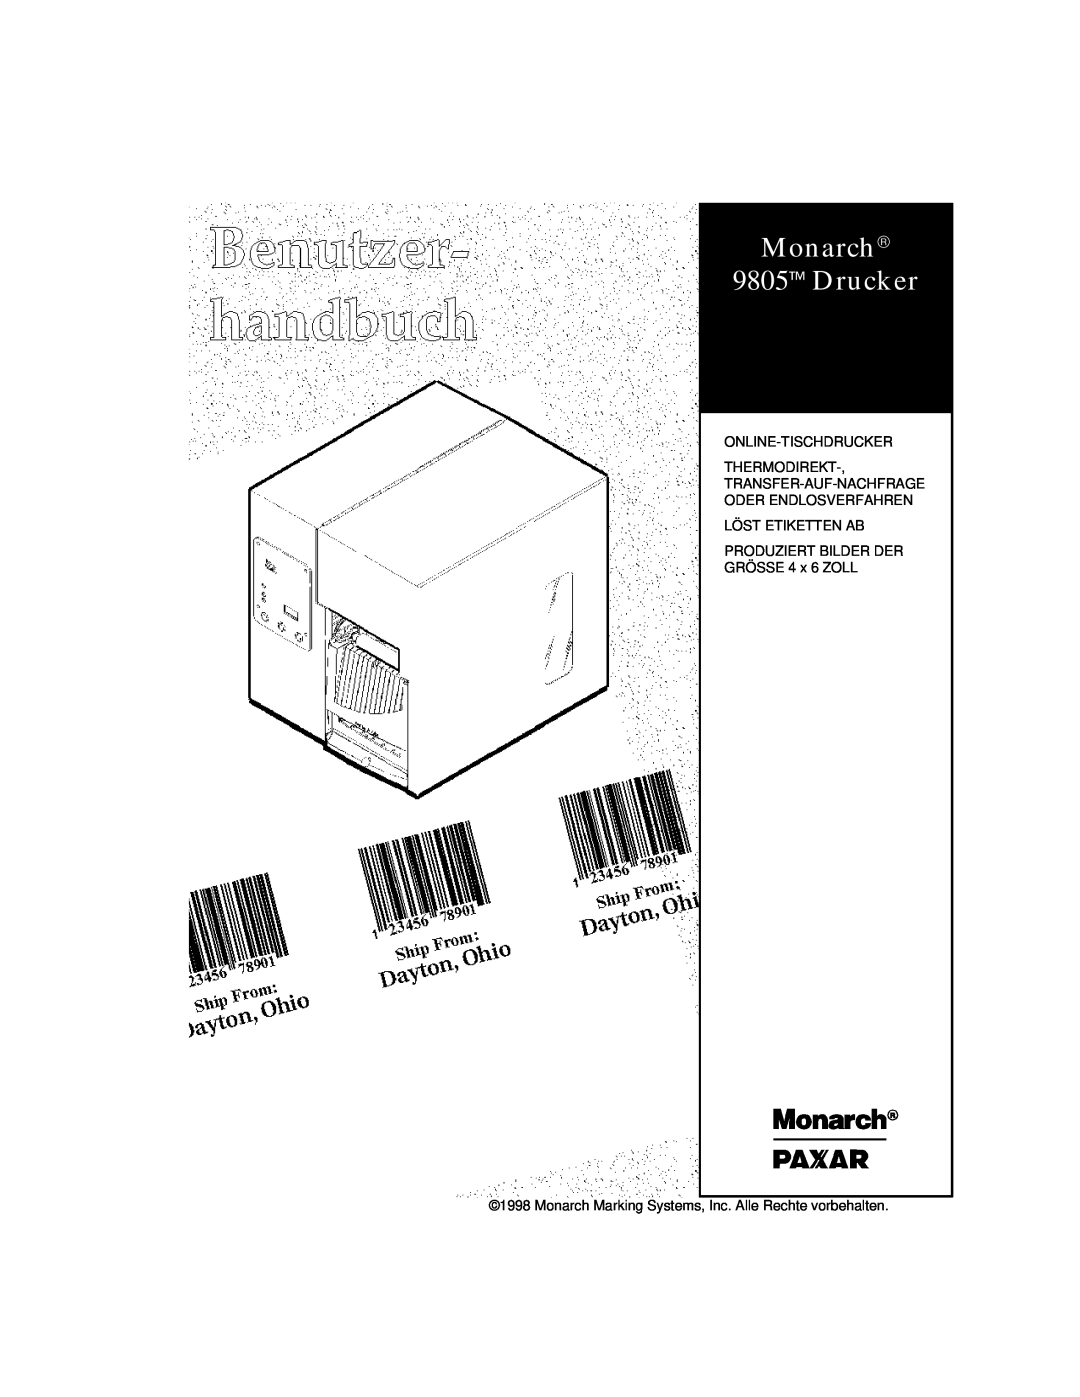 Paxar manual Monarch 9805 Drucker, Online-Tischdrucker, Thermodirekt-, Transfer-Auf-Nachfrage Oder Endlosverfahren 